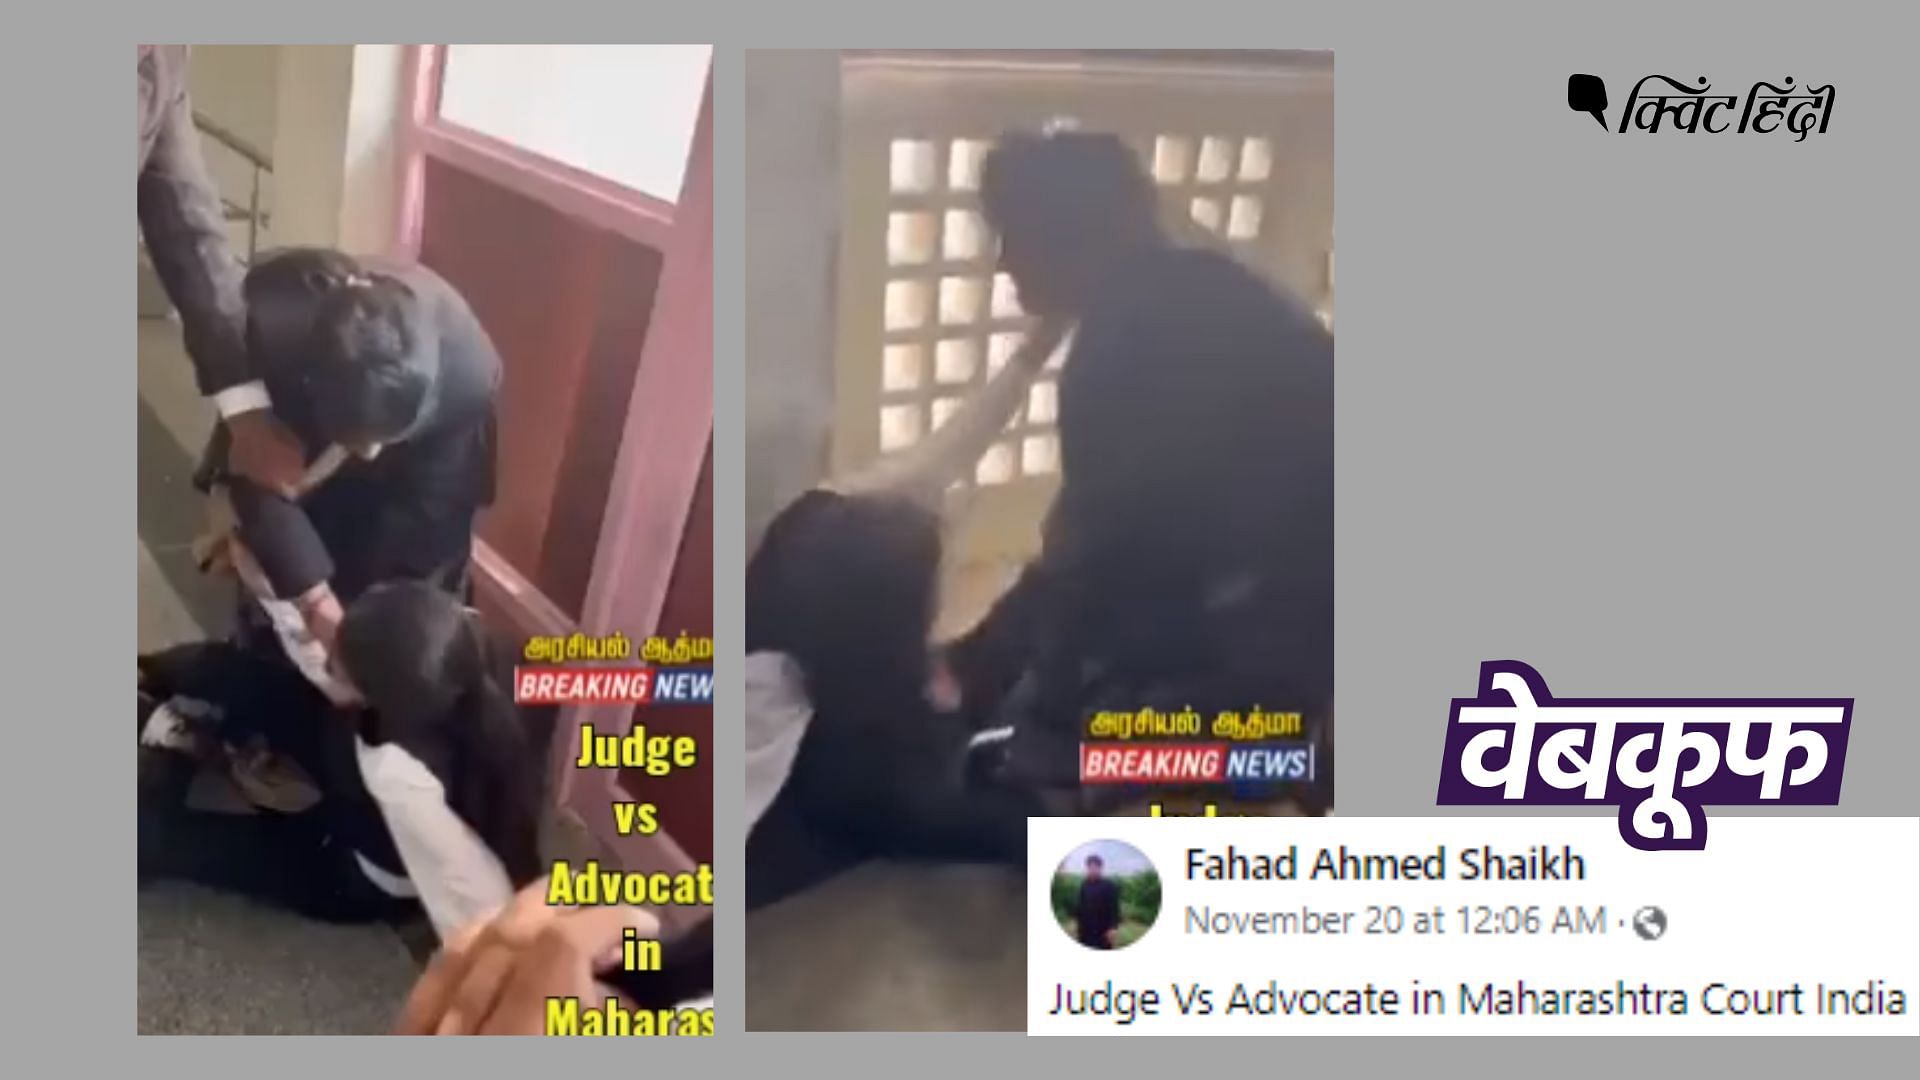 <div class="paragraphs"><p>वीडियो शेयर कर ये गलत दावा किया गया कि महाराष्ट्र की एक कोर्ट में जज और वकील के बीच झगड़ा हो गया.</p></div>